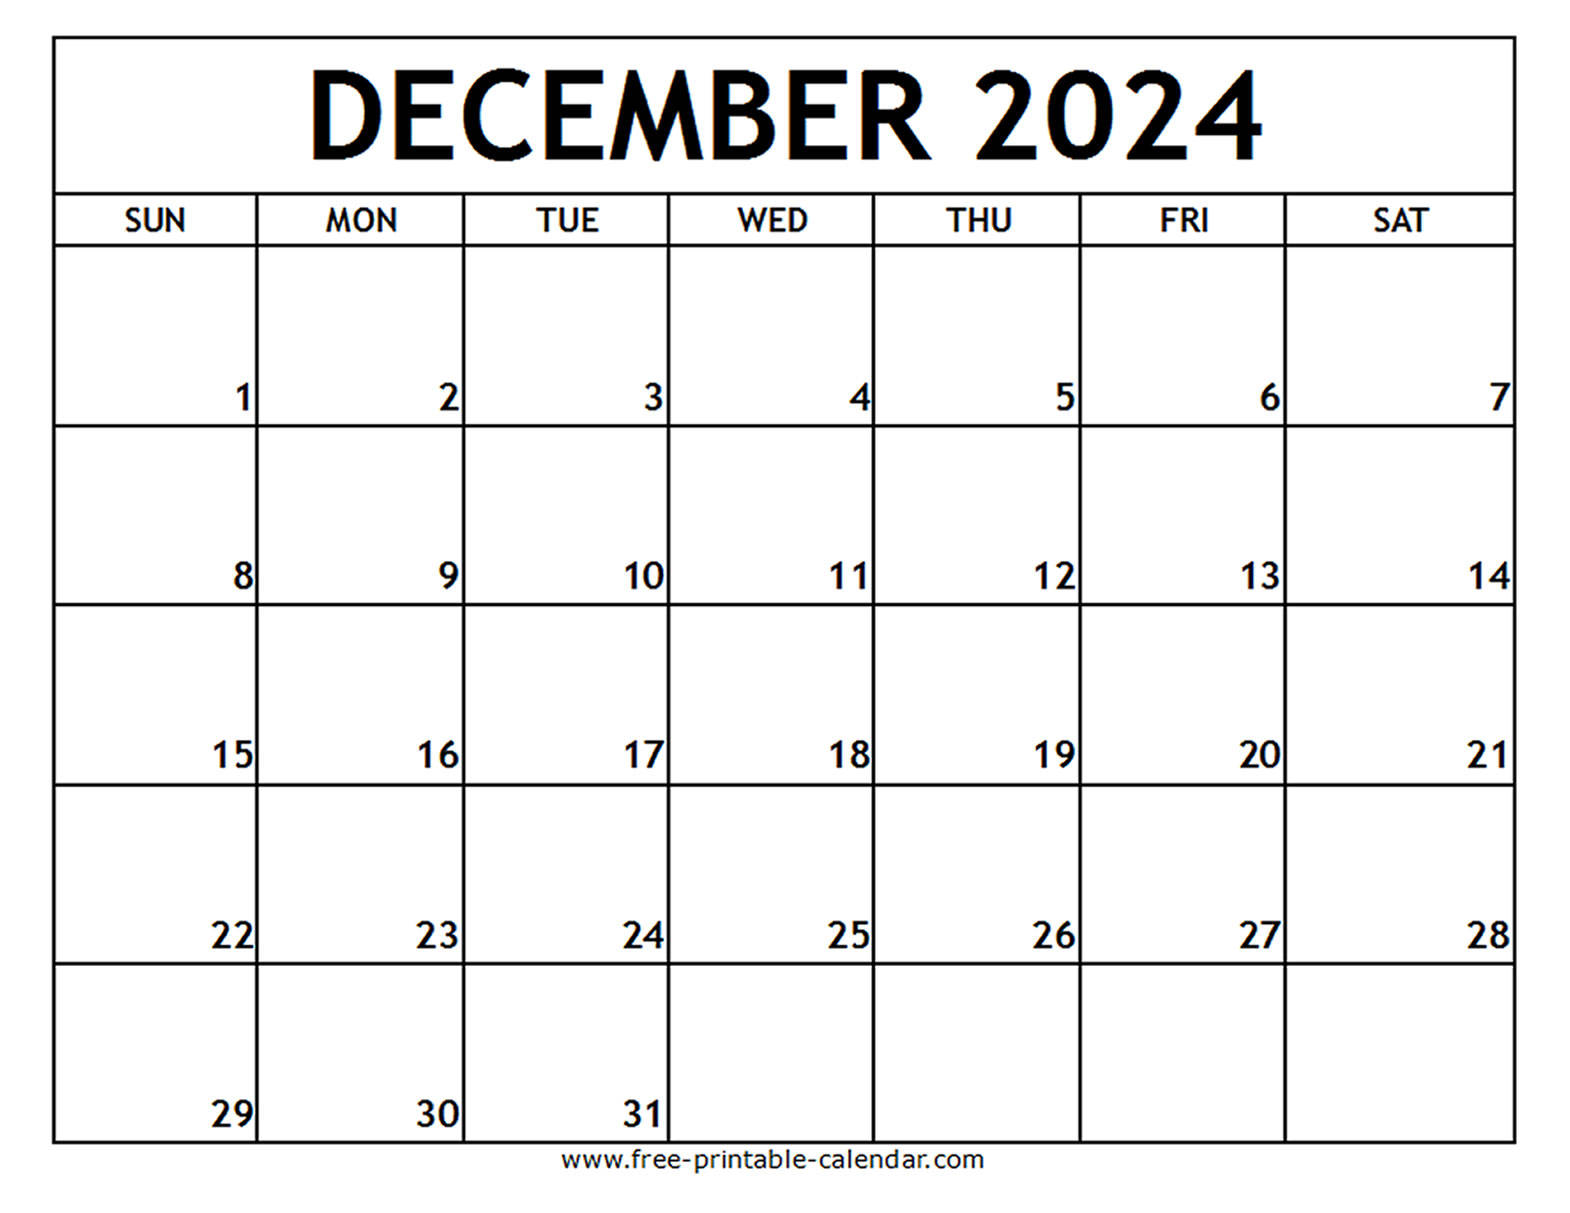 Dec 2024 Calendar Printable Free Images Nov 2024 Calendar